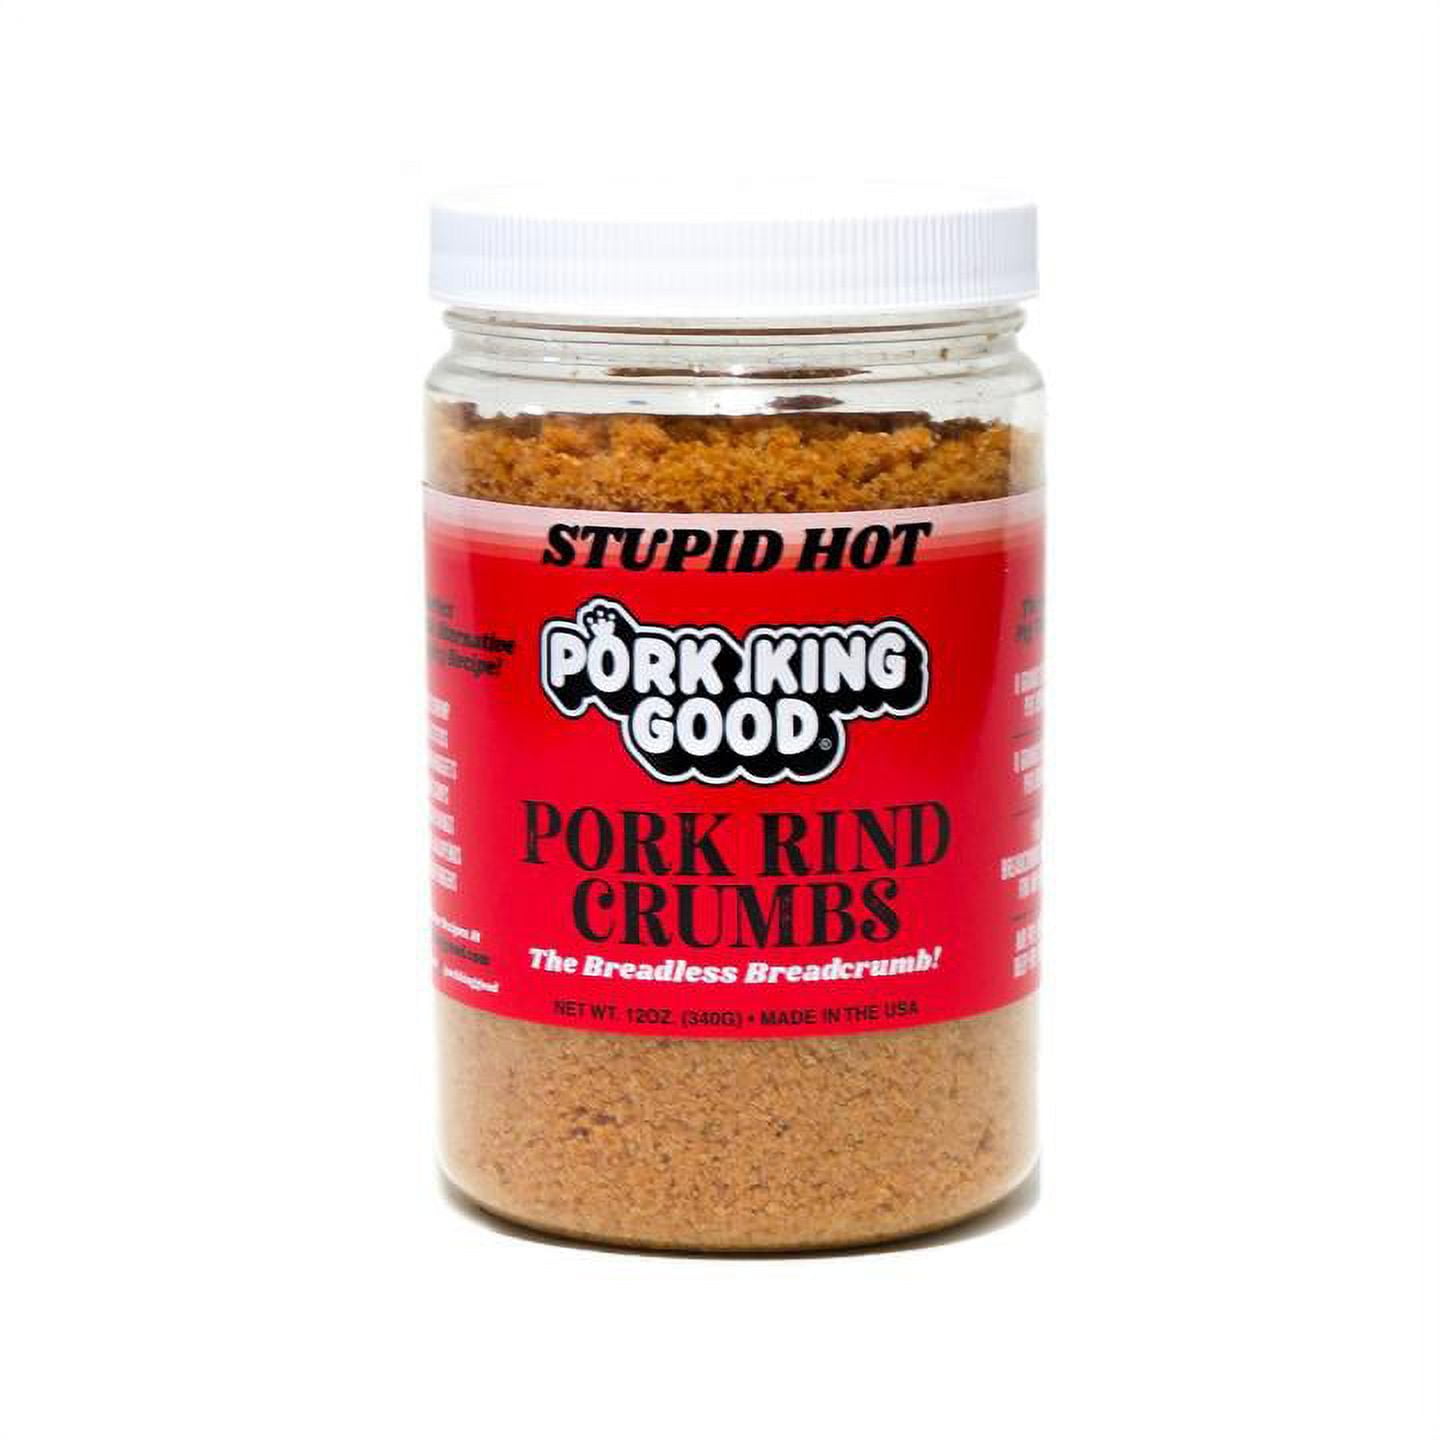 Pork King Good Salt and Vinegar Pickled Eggs 16oz jar – Stateside Crafts